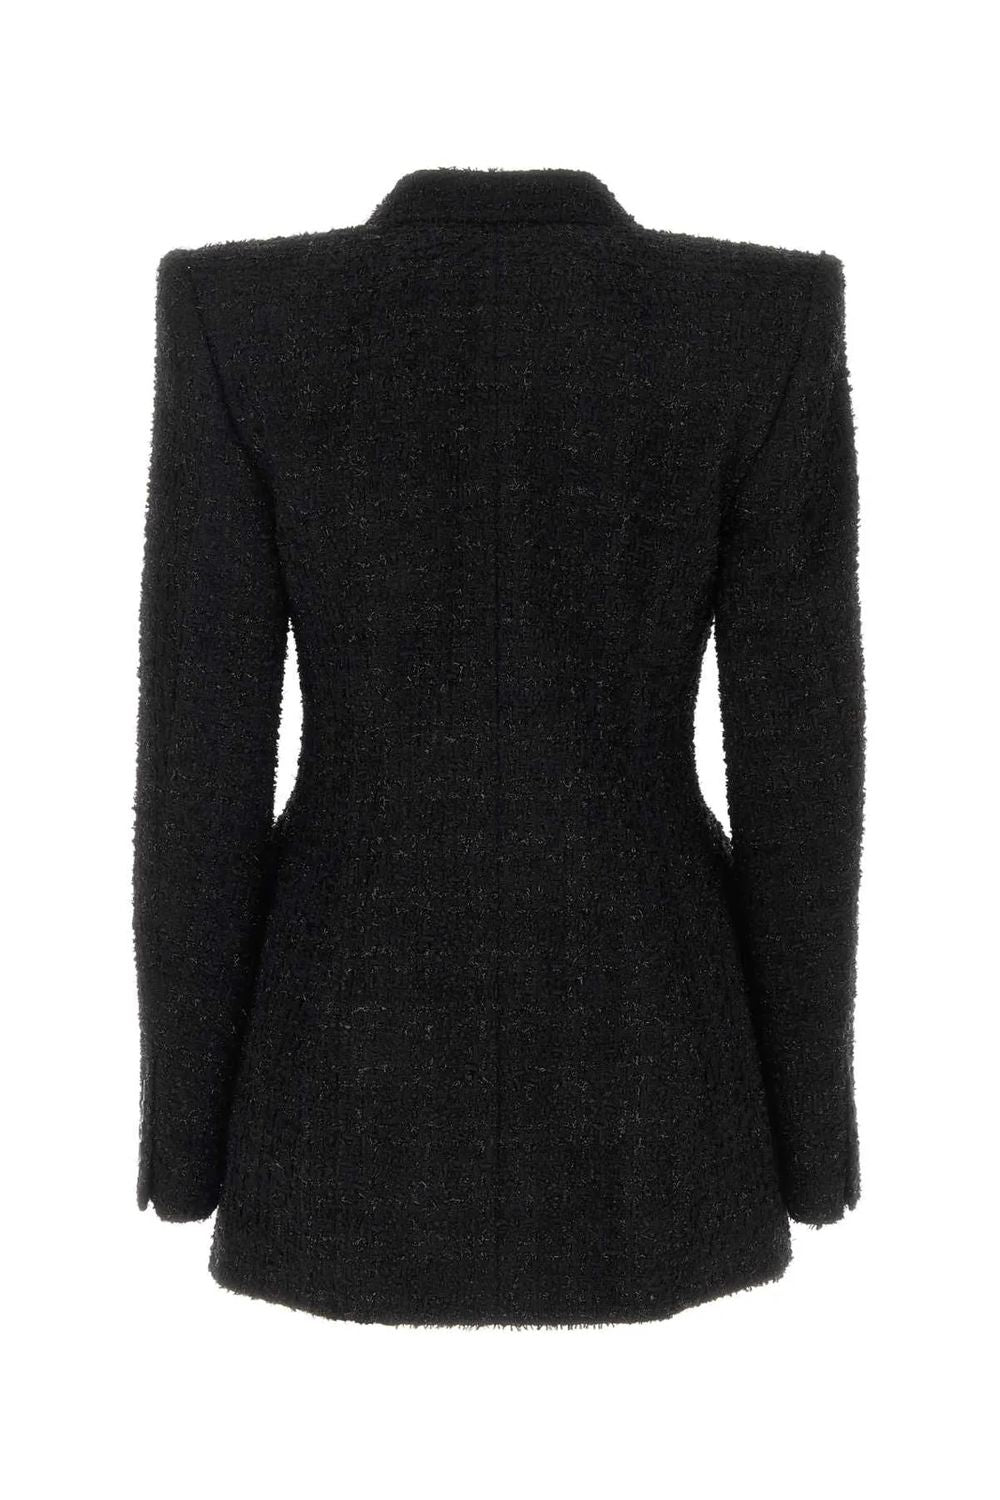 Stylish Black Cross Pattern Jacket for Women